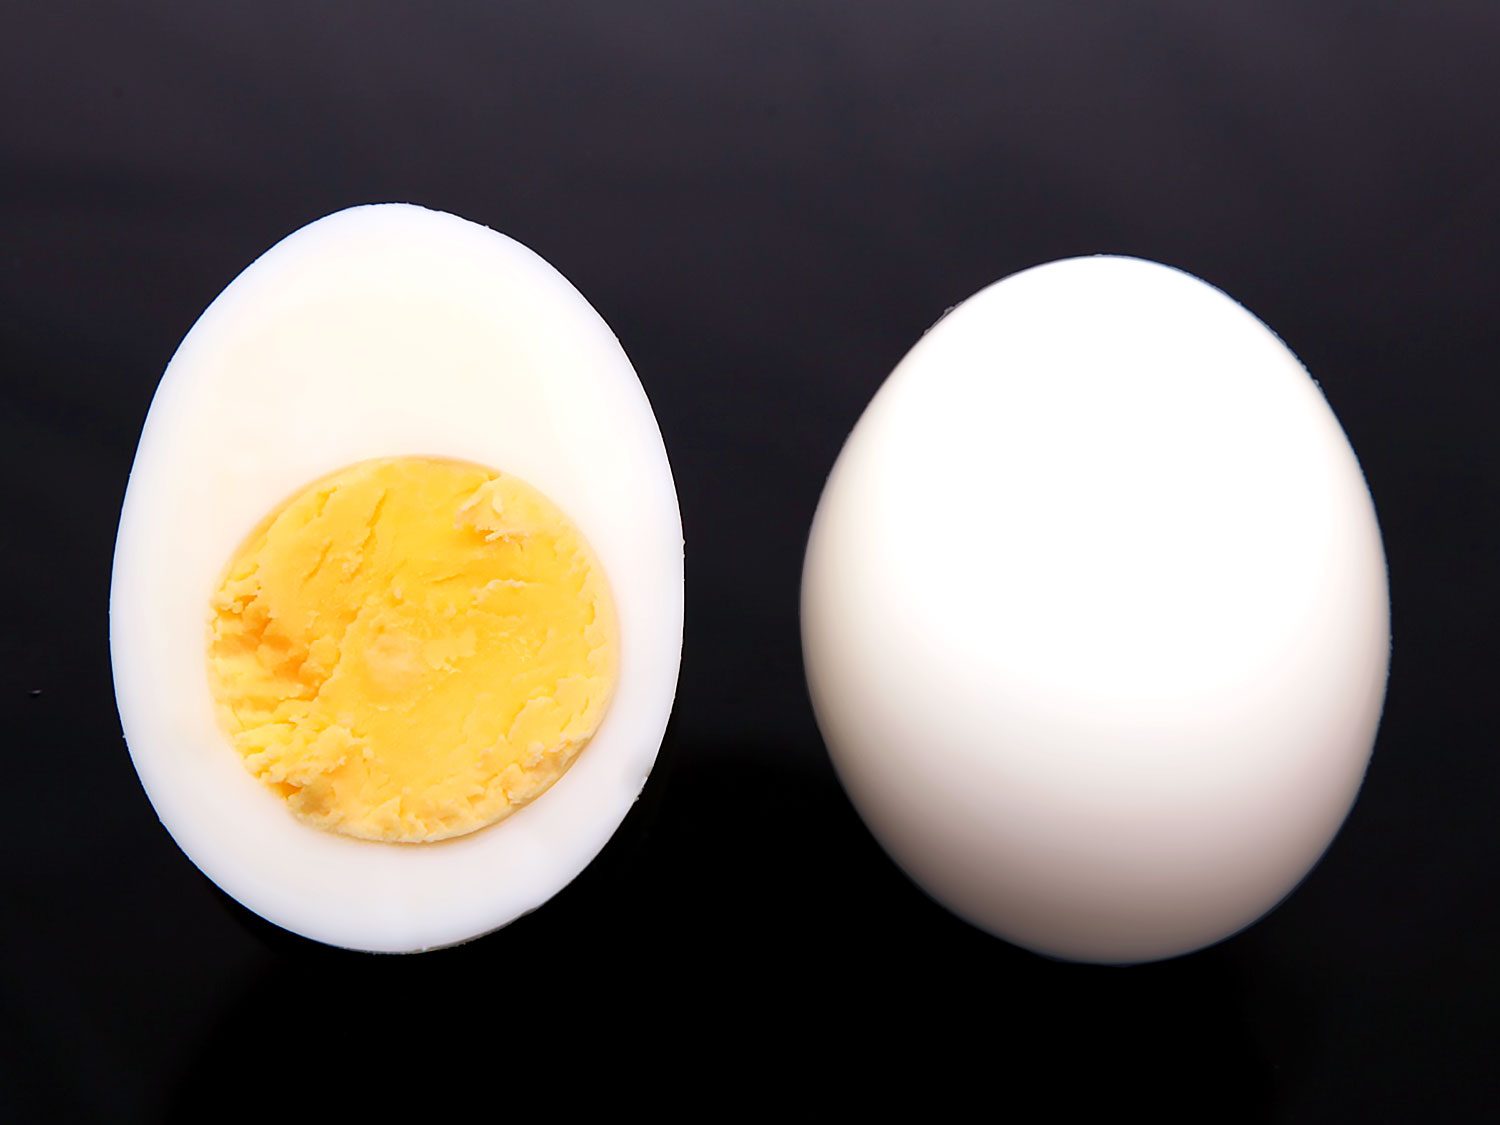 5 دلیل بسیار مهم برای مصرف تخم مرغ